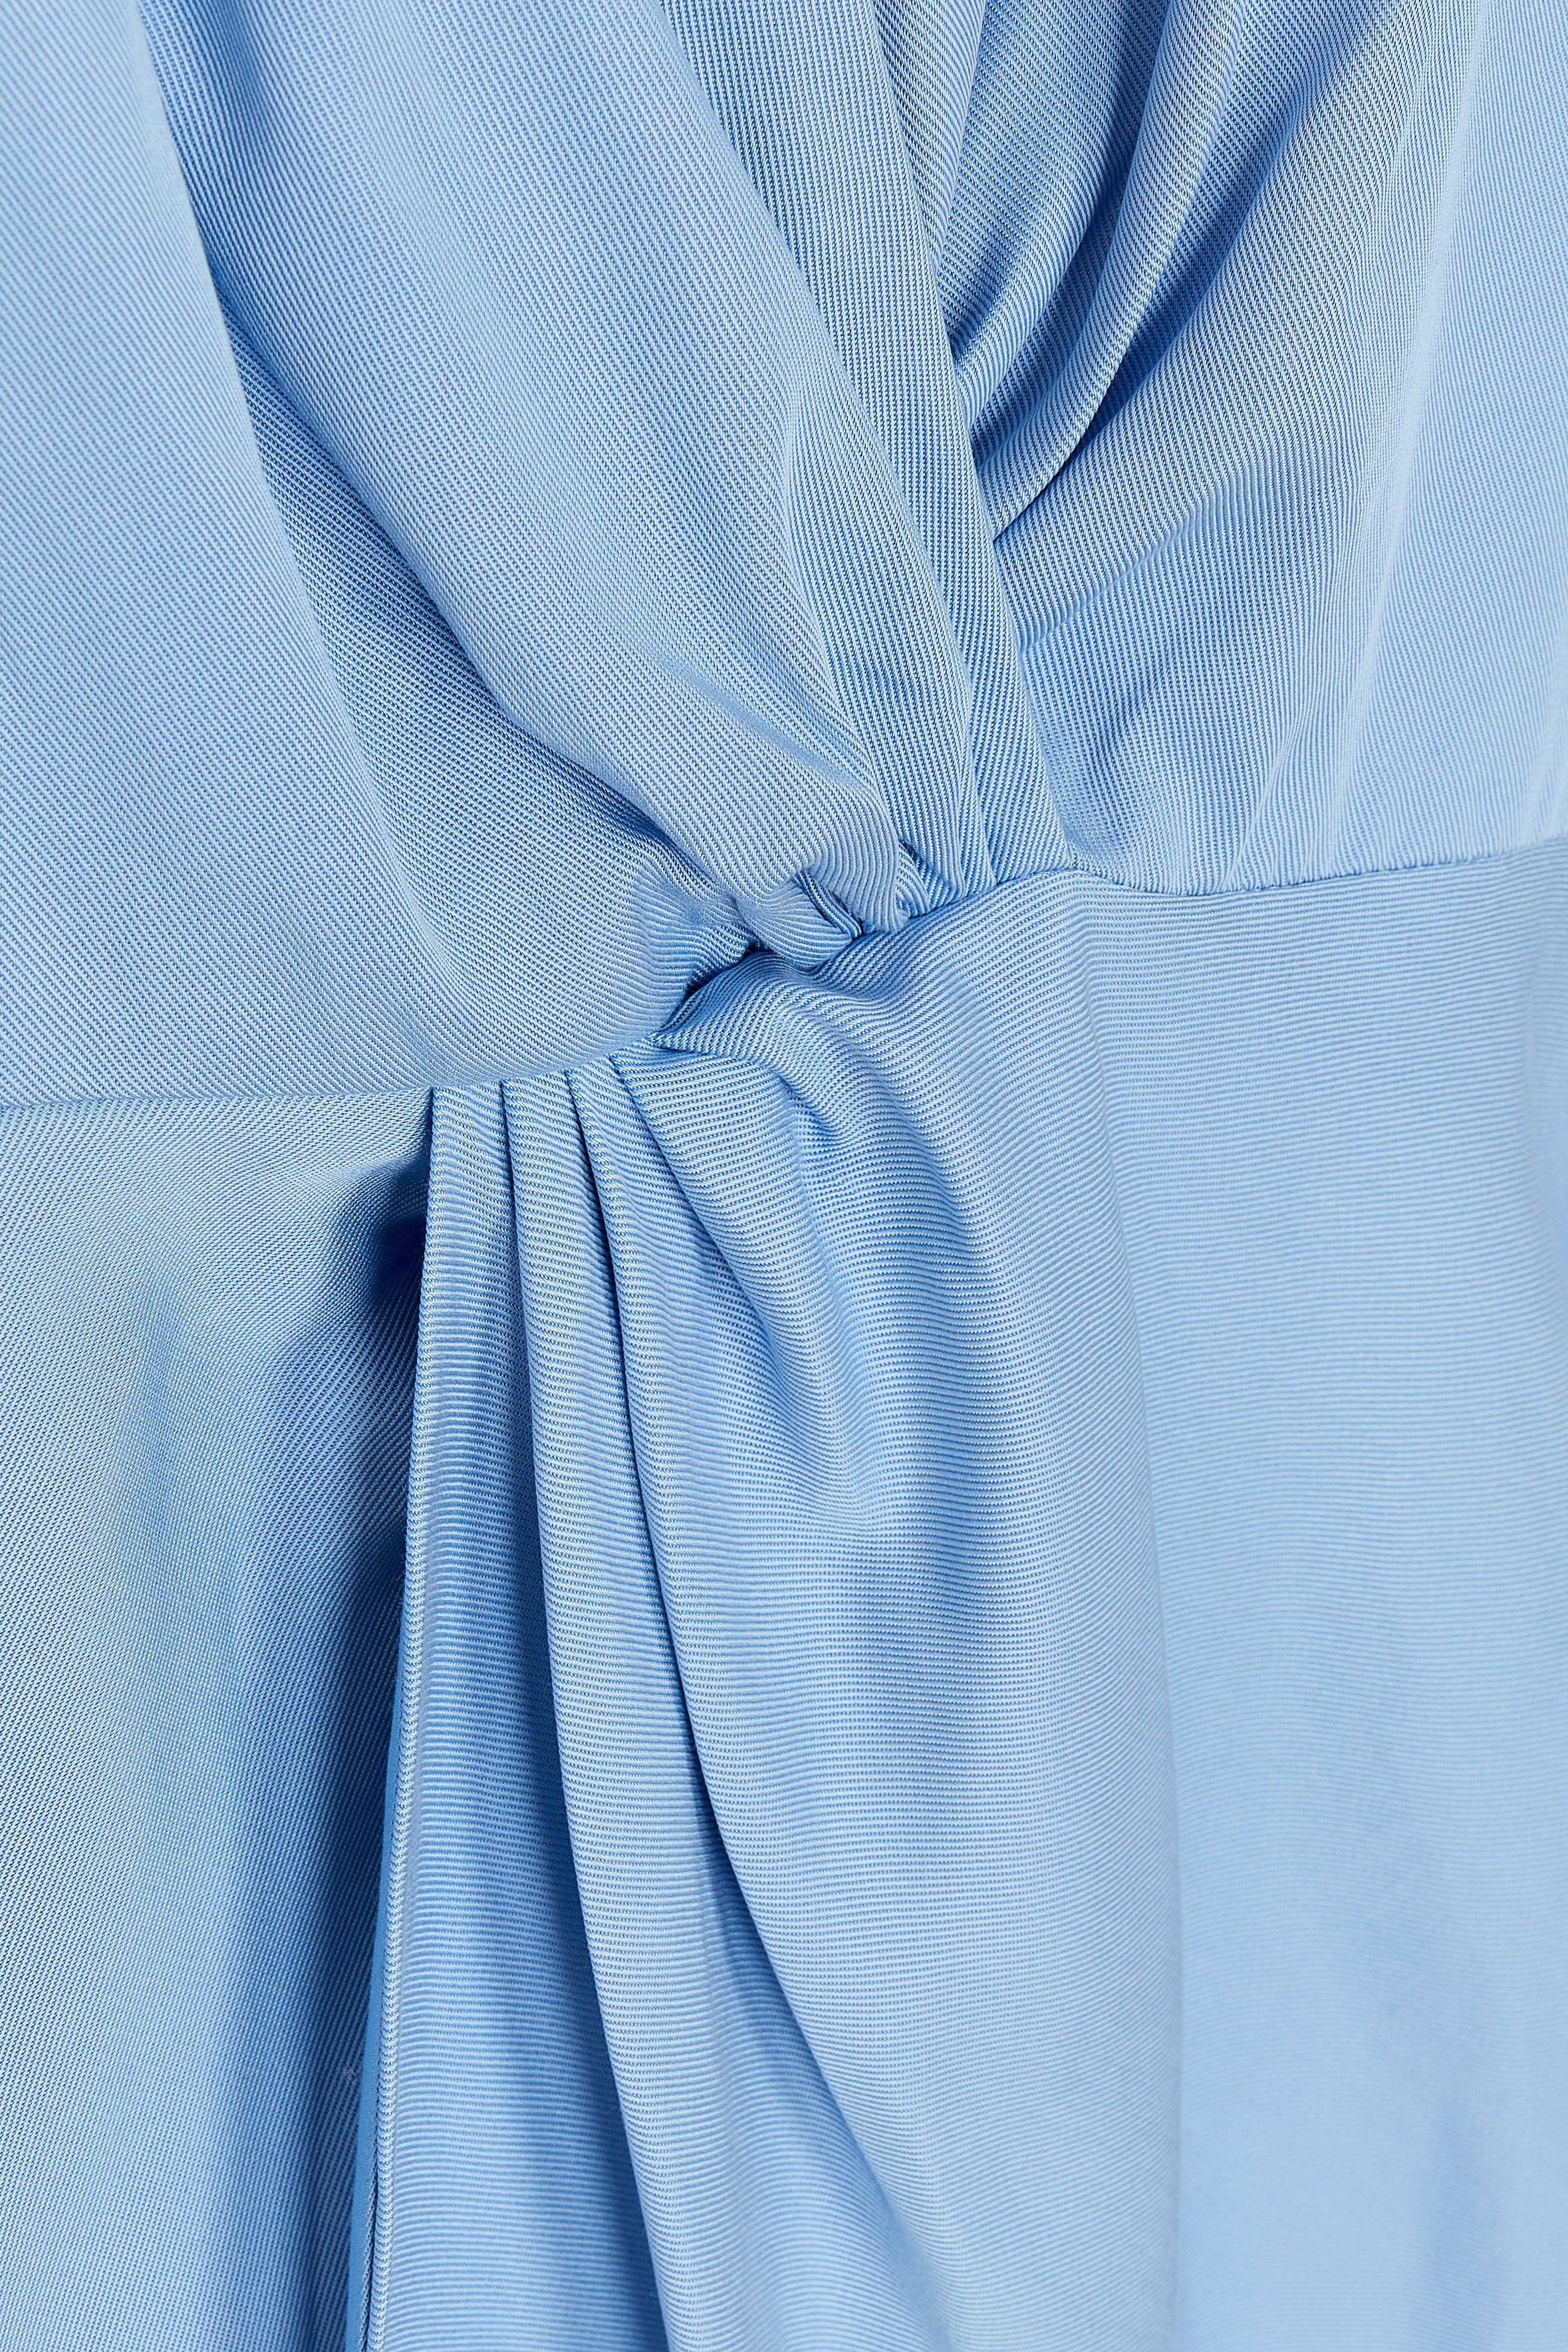 CKS Dames - DEMO - korte jurk - lichtblauw